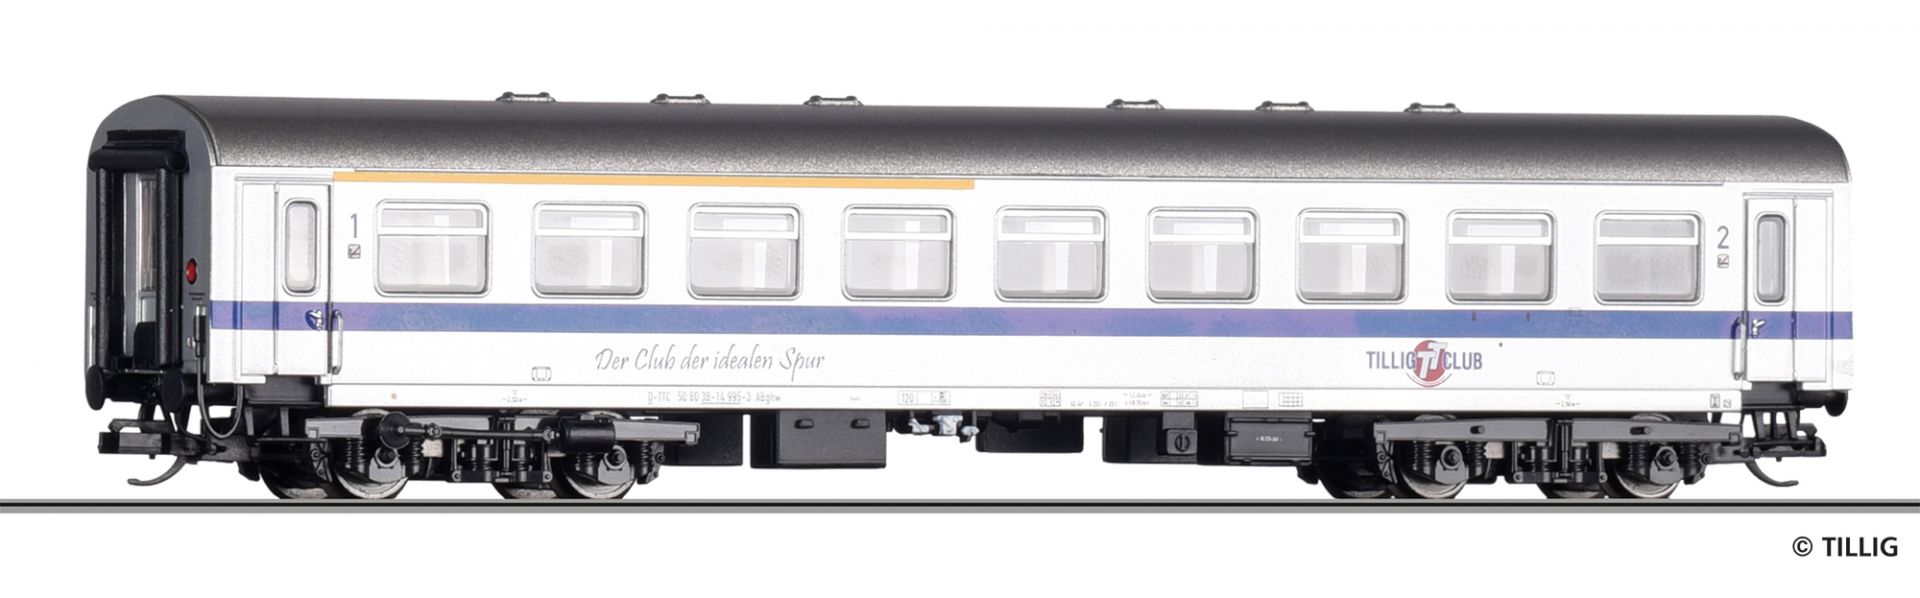 502311 | Reisezugwagen TTC -werksseitig ausverkauft-